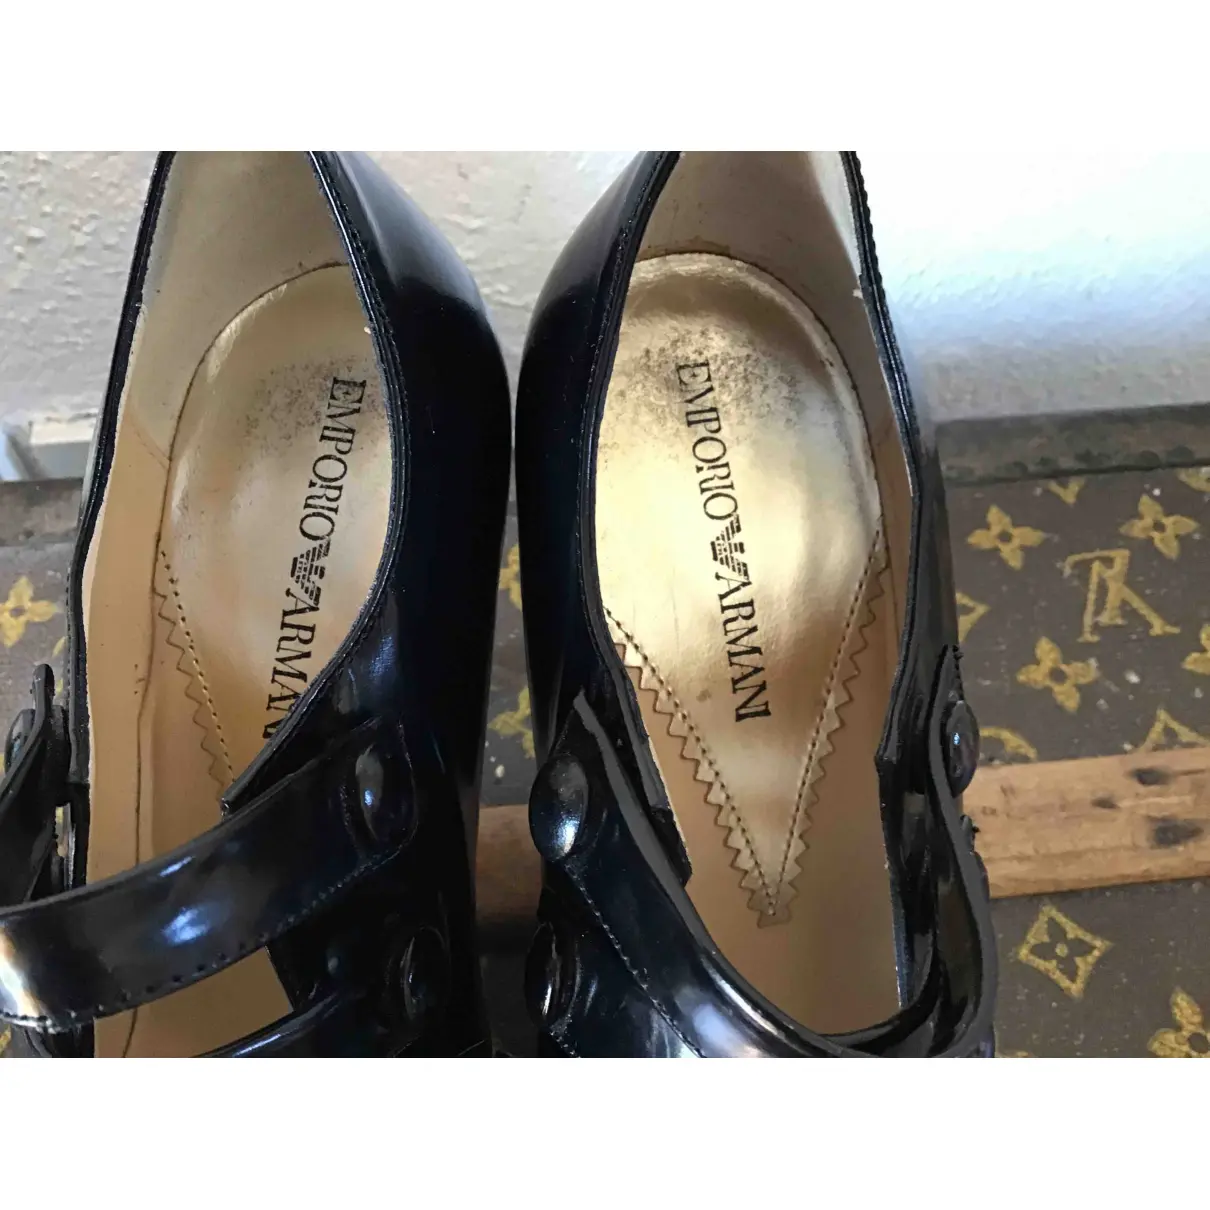 Patent leather heels Emporio Armani